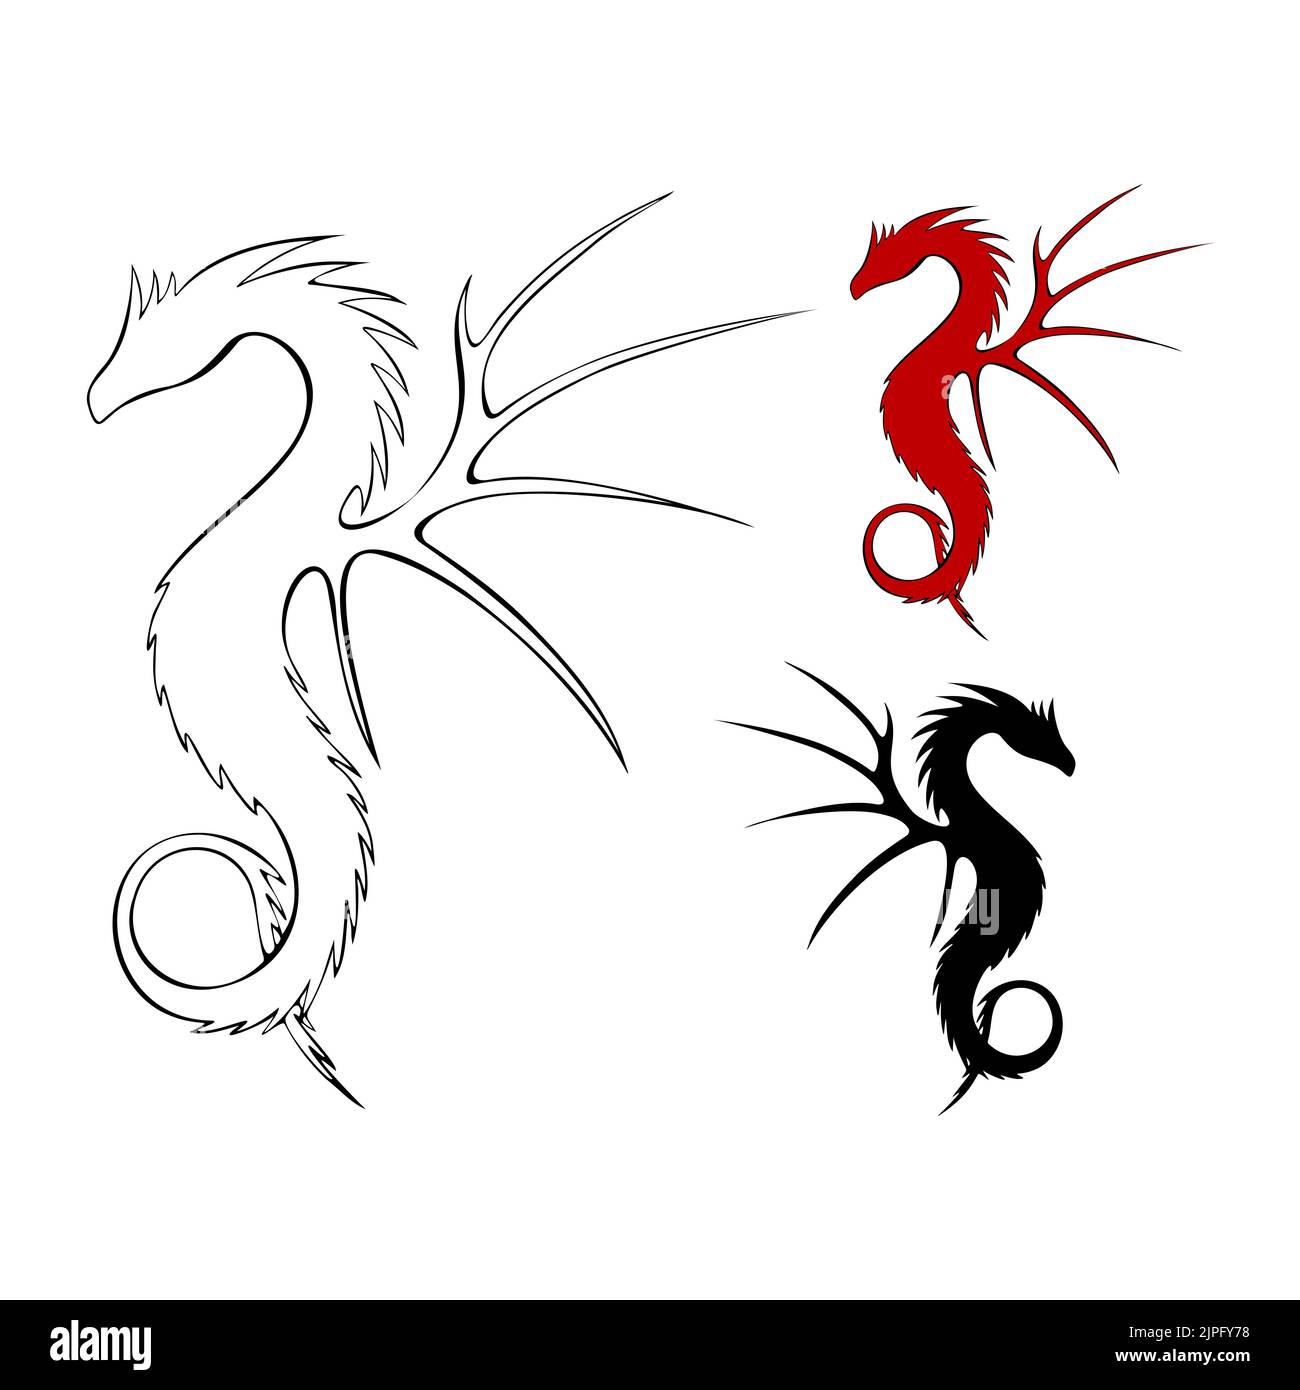 Contour et silhouette de dragon noir et rouge foncé, ensemble dessiné à la main. Illustration vectorielle Illustration de Vecteur